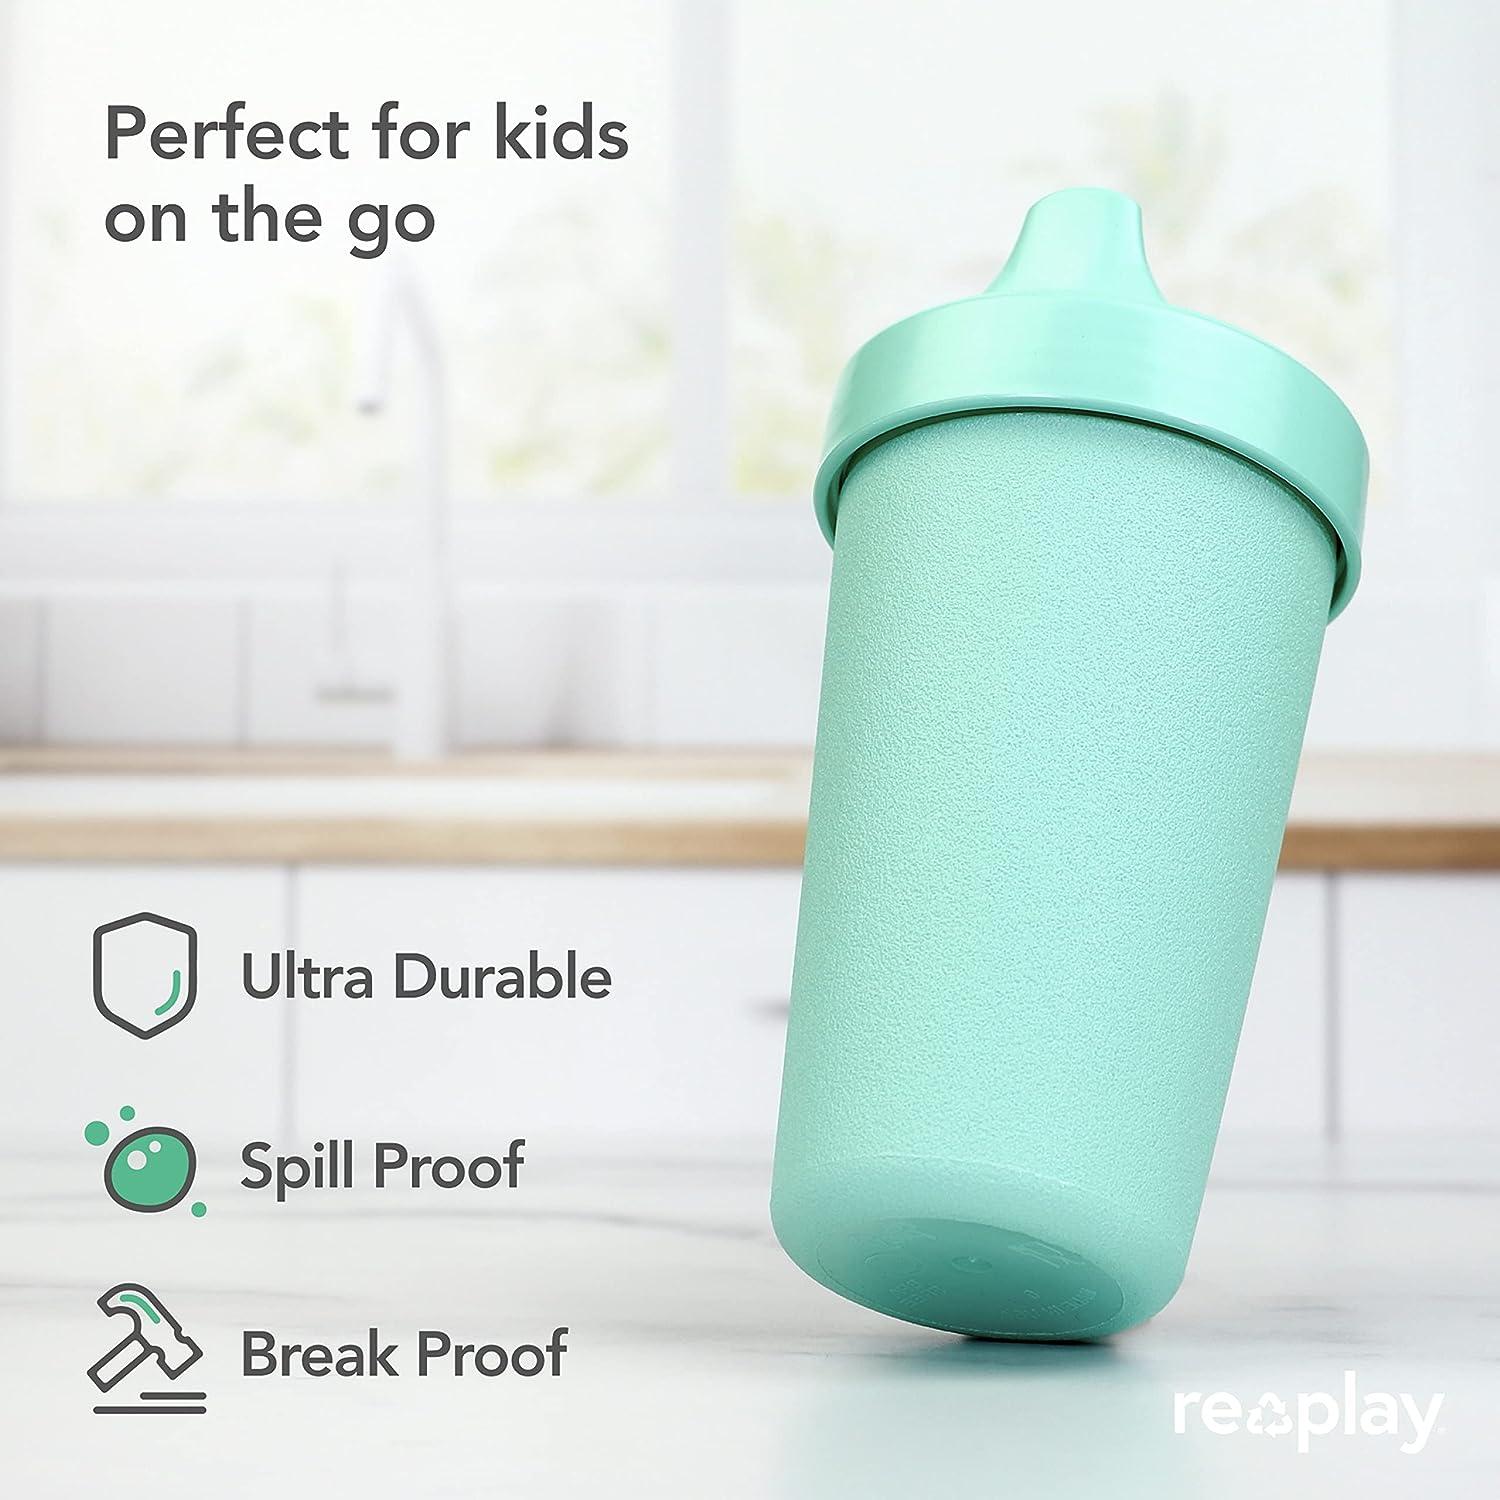 Re-Play - 8 oz. Silicone Sippy Cup Aqua